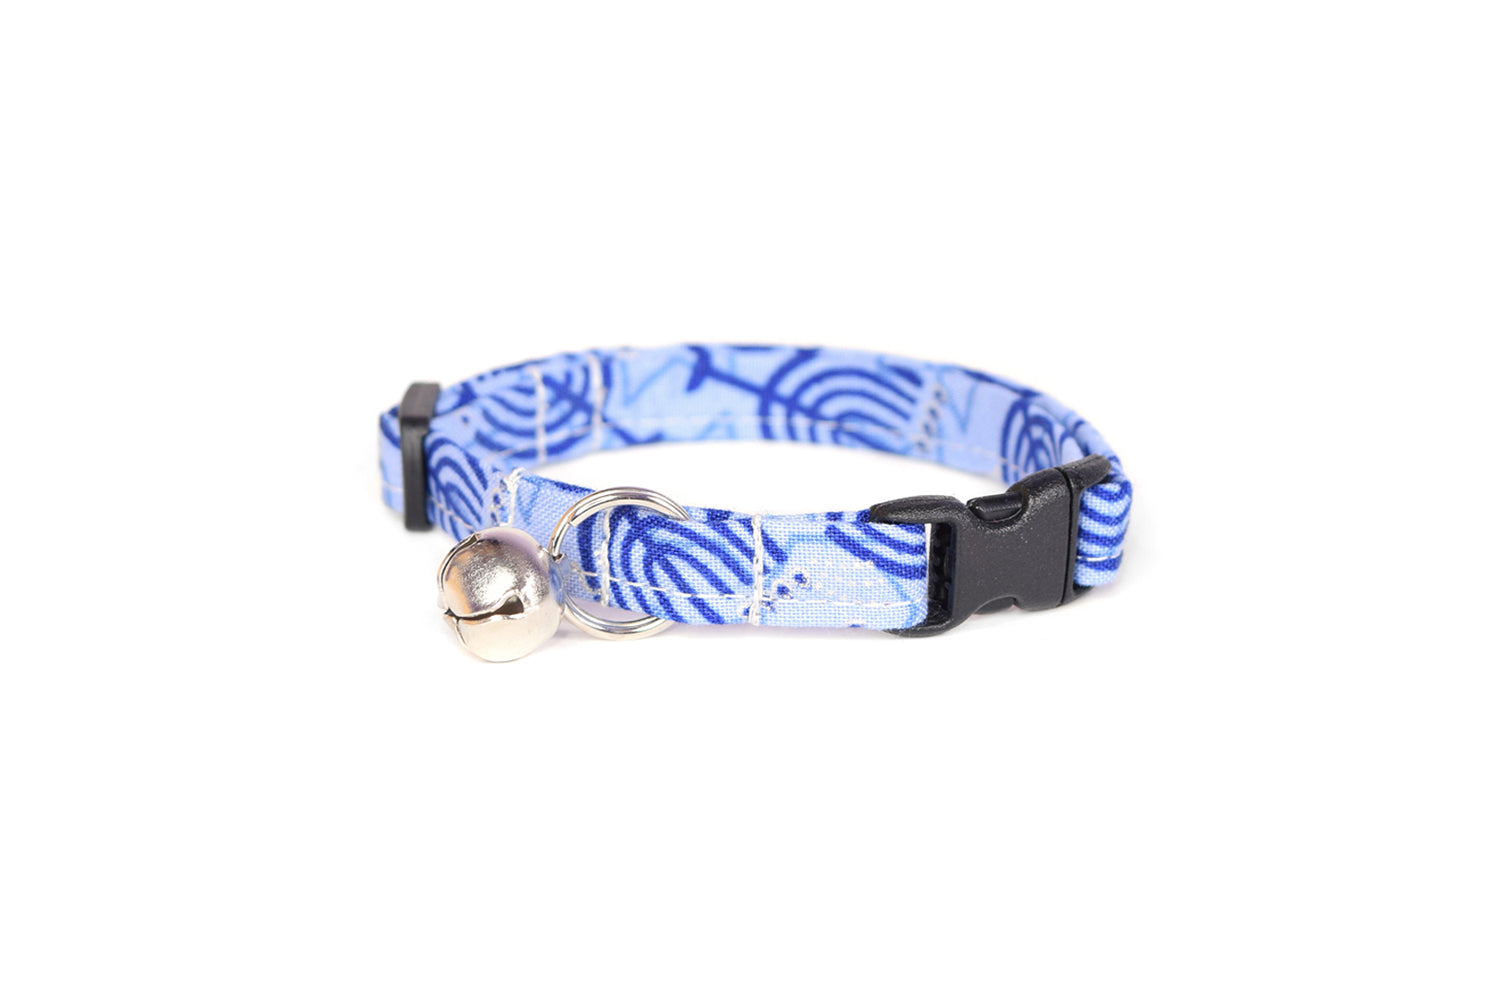 Hanukkah Cat Collar - Blue Menorah Cat Collar - Breakaway Cat Collar - Handmade by Kira's Pet Shop